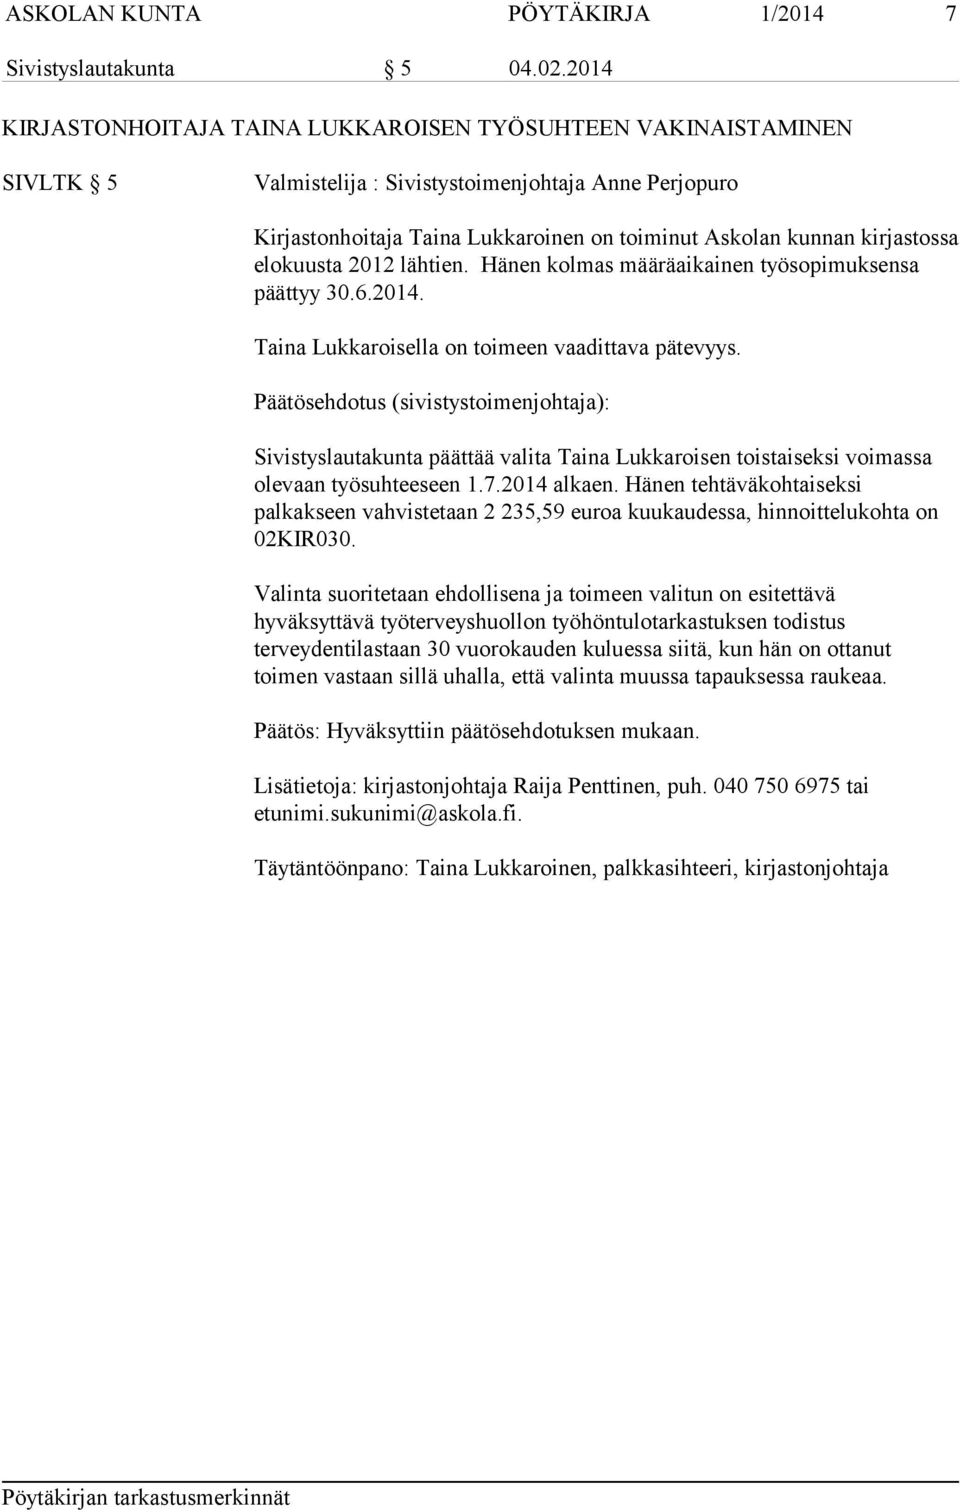 kirjastossa elokuusta 2012 lähtien. Hänen kolmas määräaikainen työsopimuksensa päättyy 30.6.2014. Taina Lukkaroisella on toimeen vaadittava pätevyys.